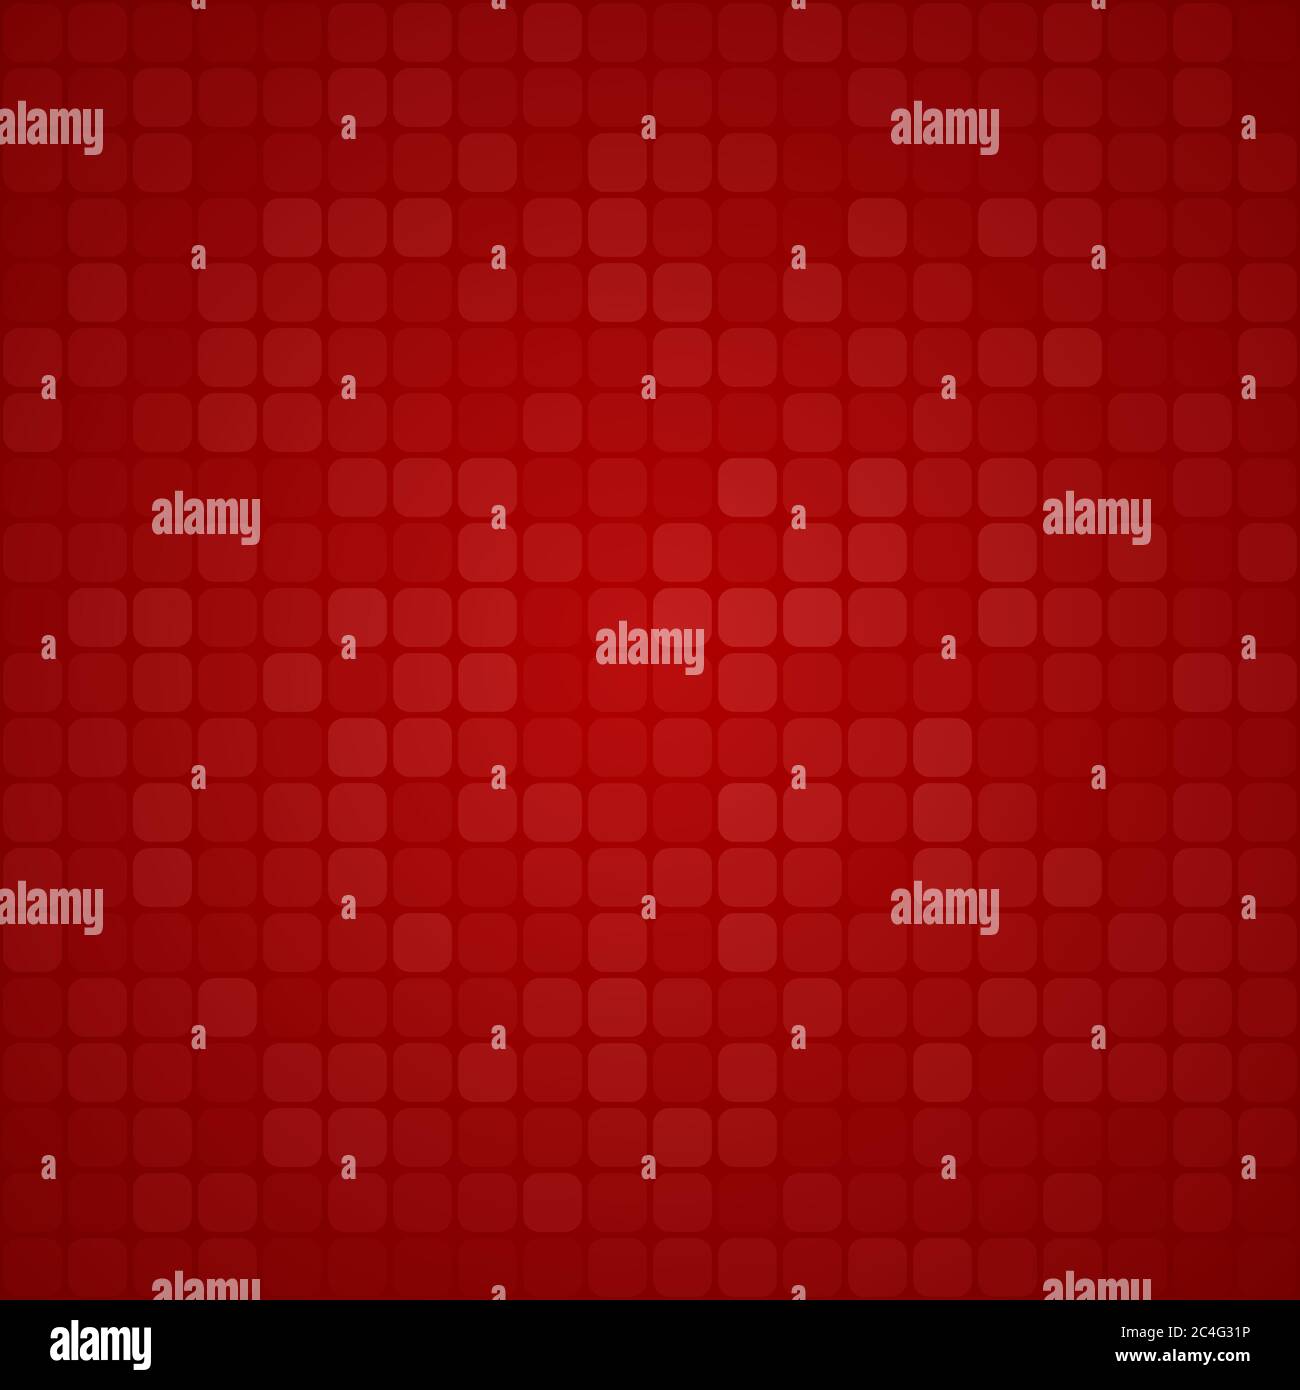 Abstrakter Hintergrund von kleinen Quadraten oder Pixeln in roten Farben Stock Vektor